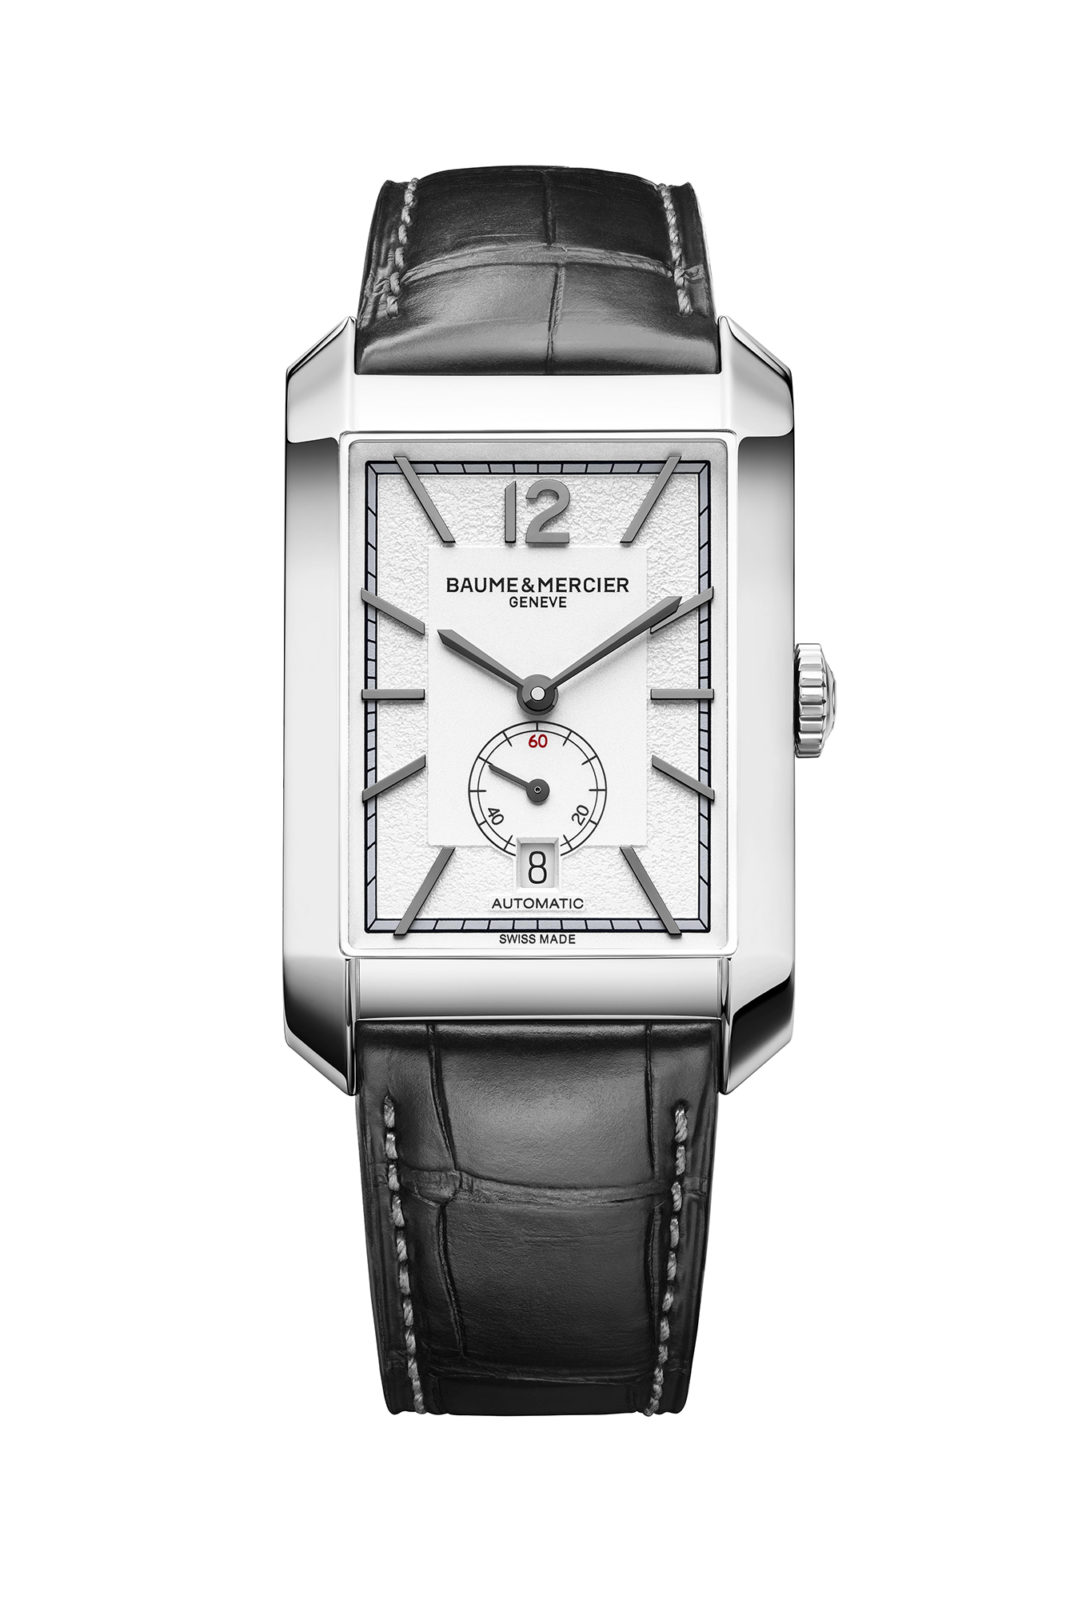 Baume & Mercier Watches & Wonders 2020 - Hampton Automatique petite seconde date